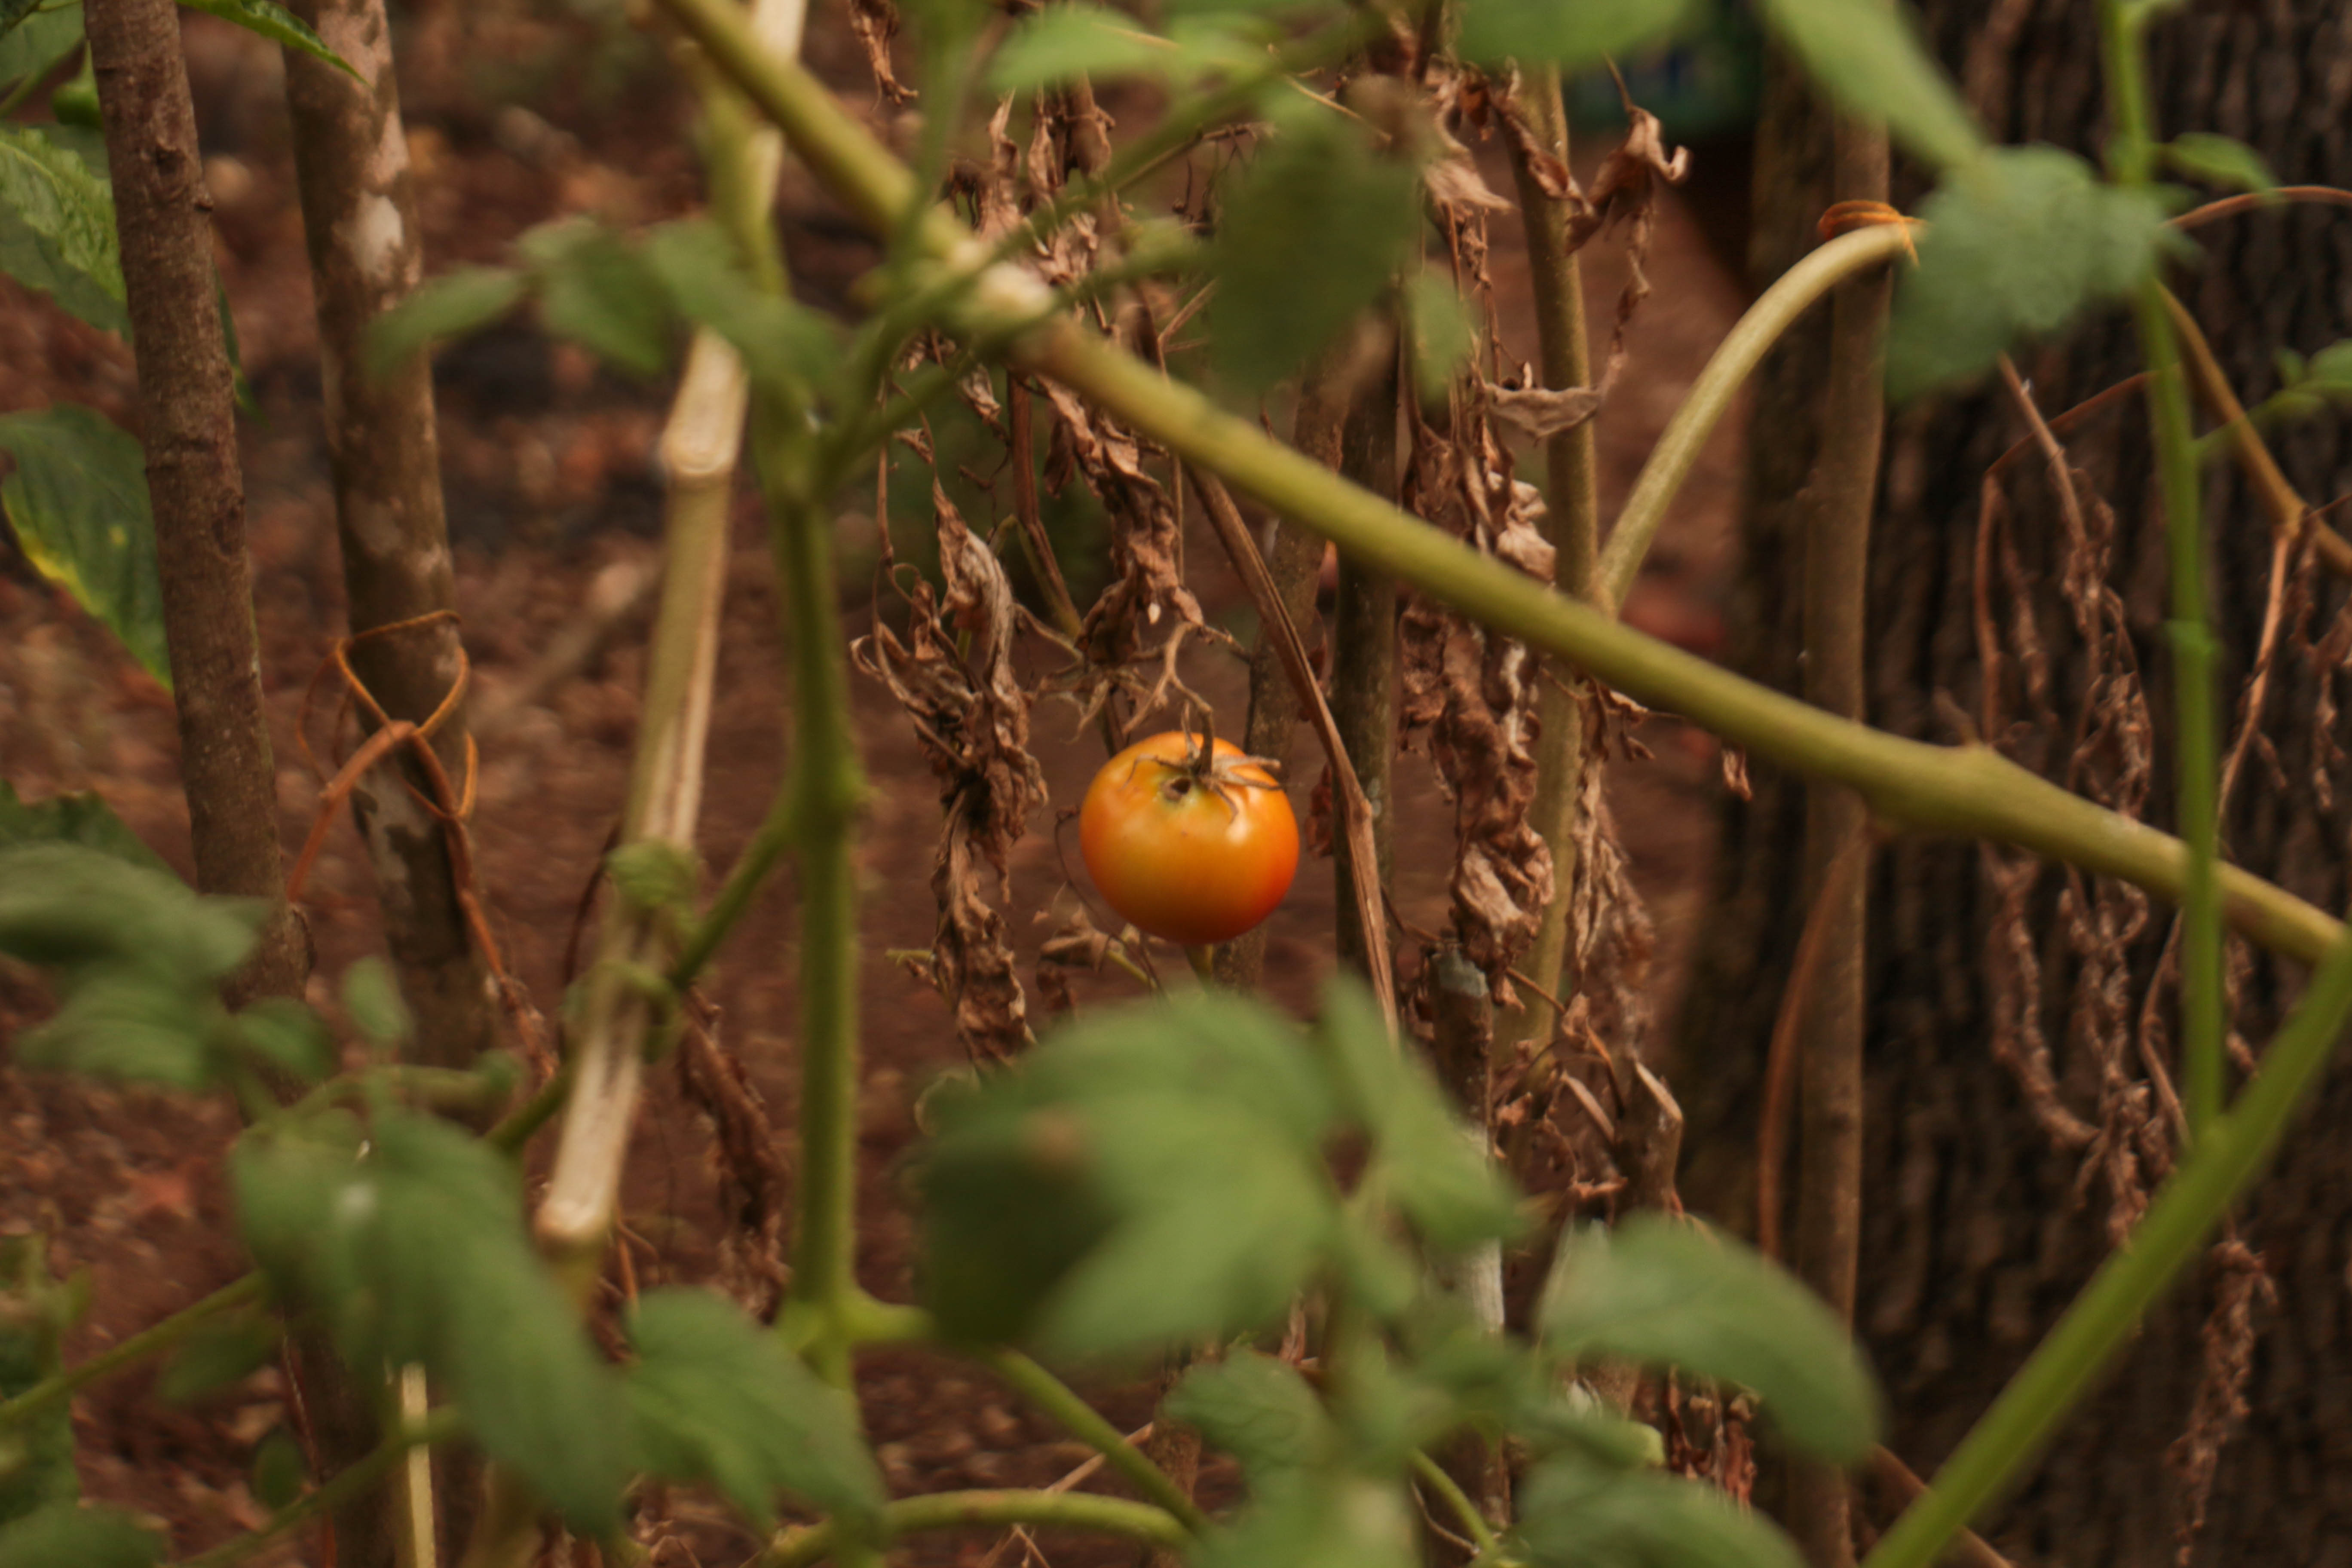 Plantação de tomate da aldeia Katurâma, em São Joaquim de Bicas. Índigenas na agricultura enfrentam desafios causados pelo homem branco.